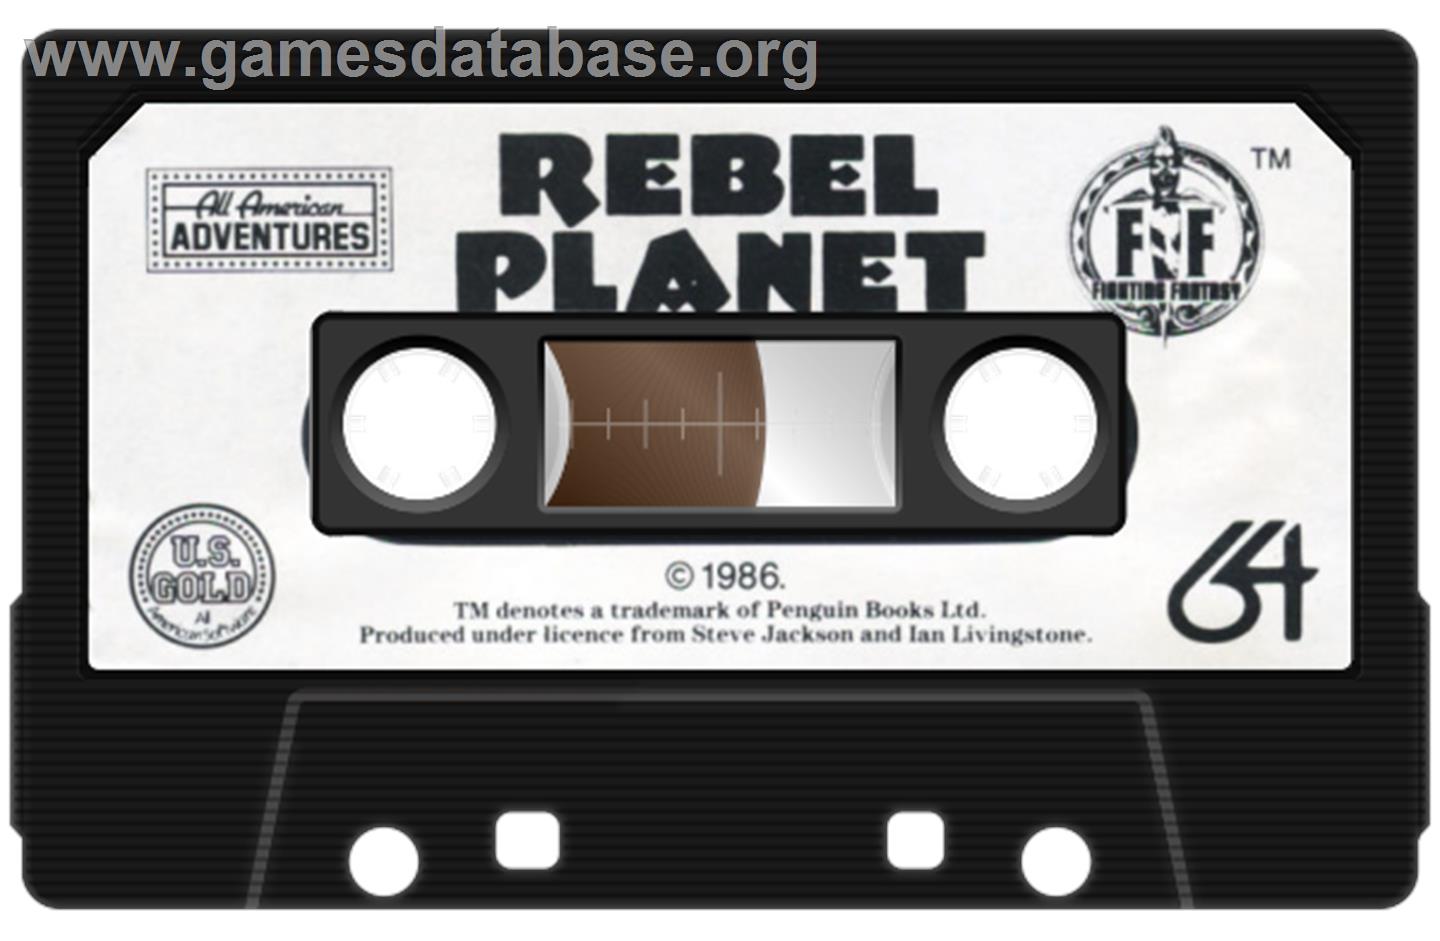 Rebel Planet - Commodore 64 - Artwork - Cartridge